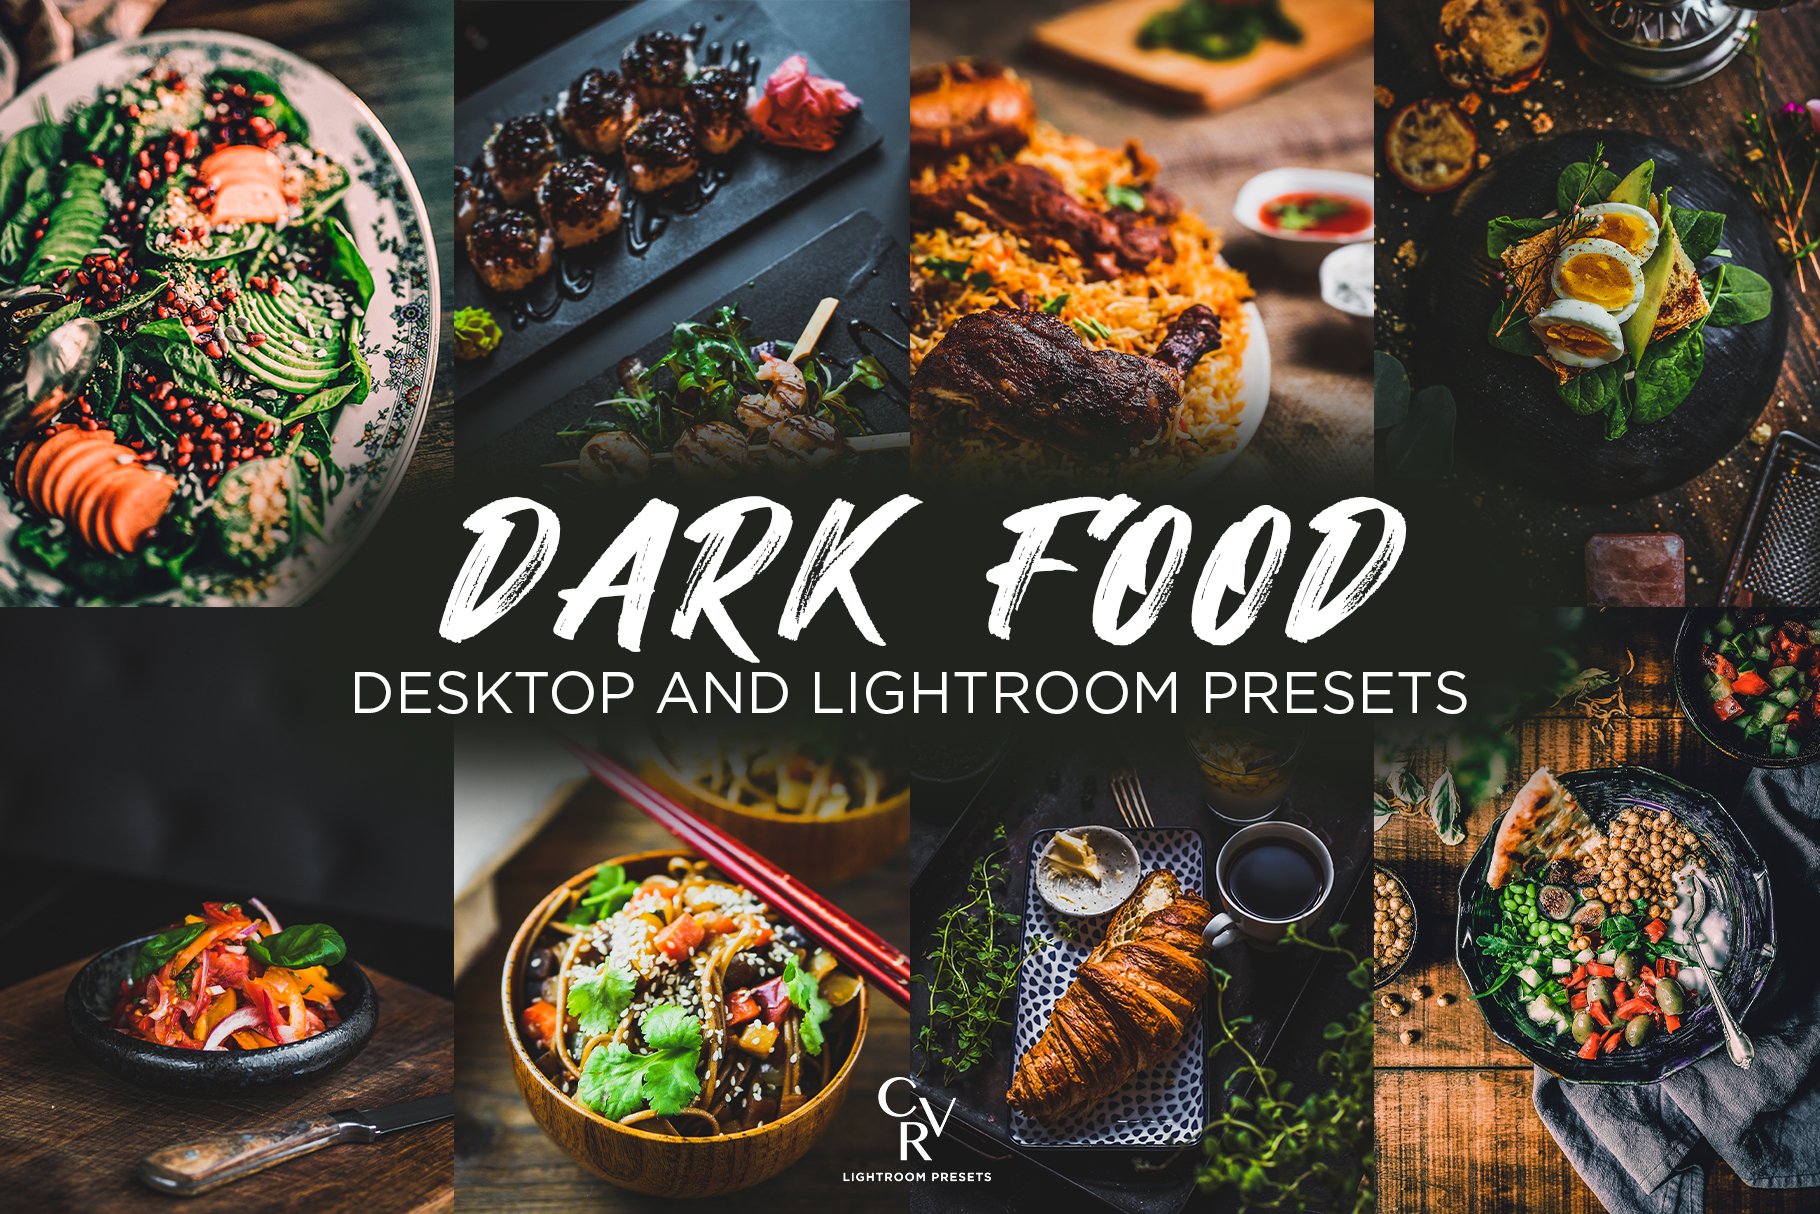 6 Dark Food Lightroom Presetscover image.